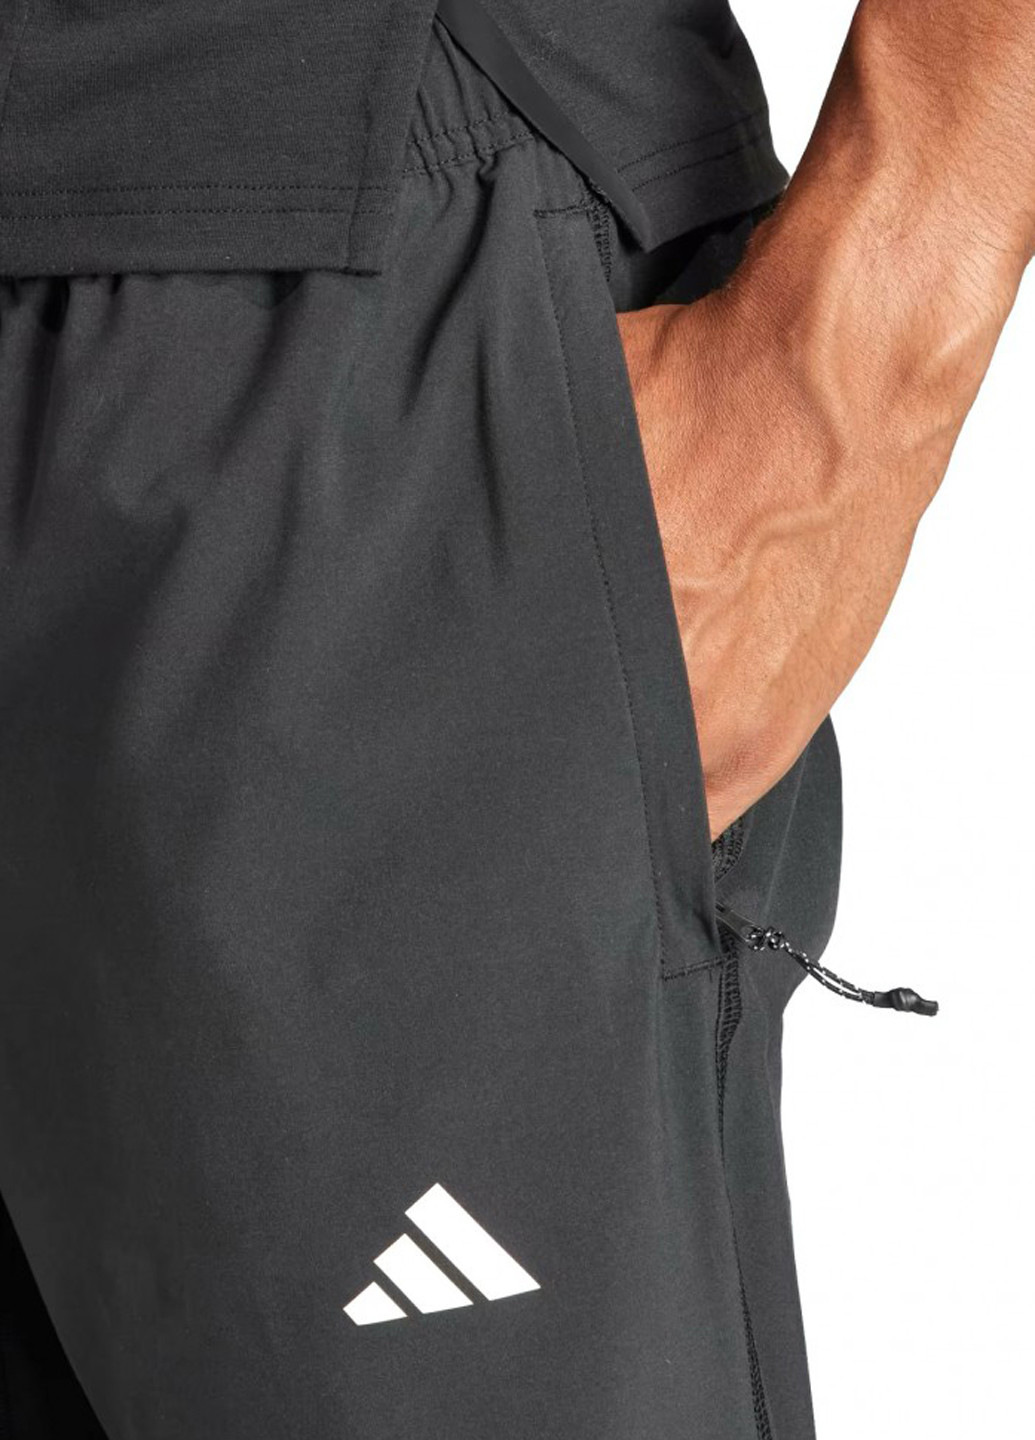 Черные спортивные демисезонные джоггеры брюки adidas